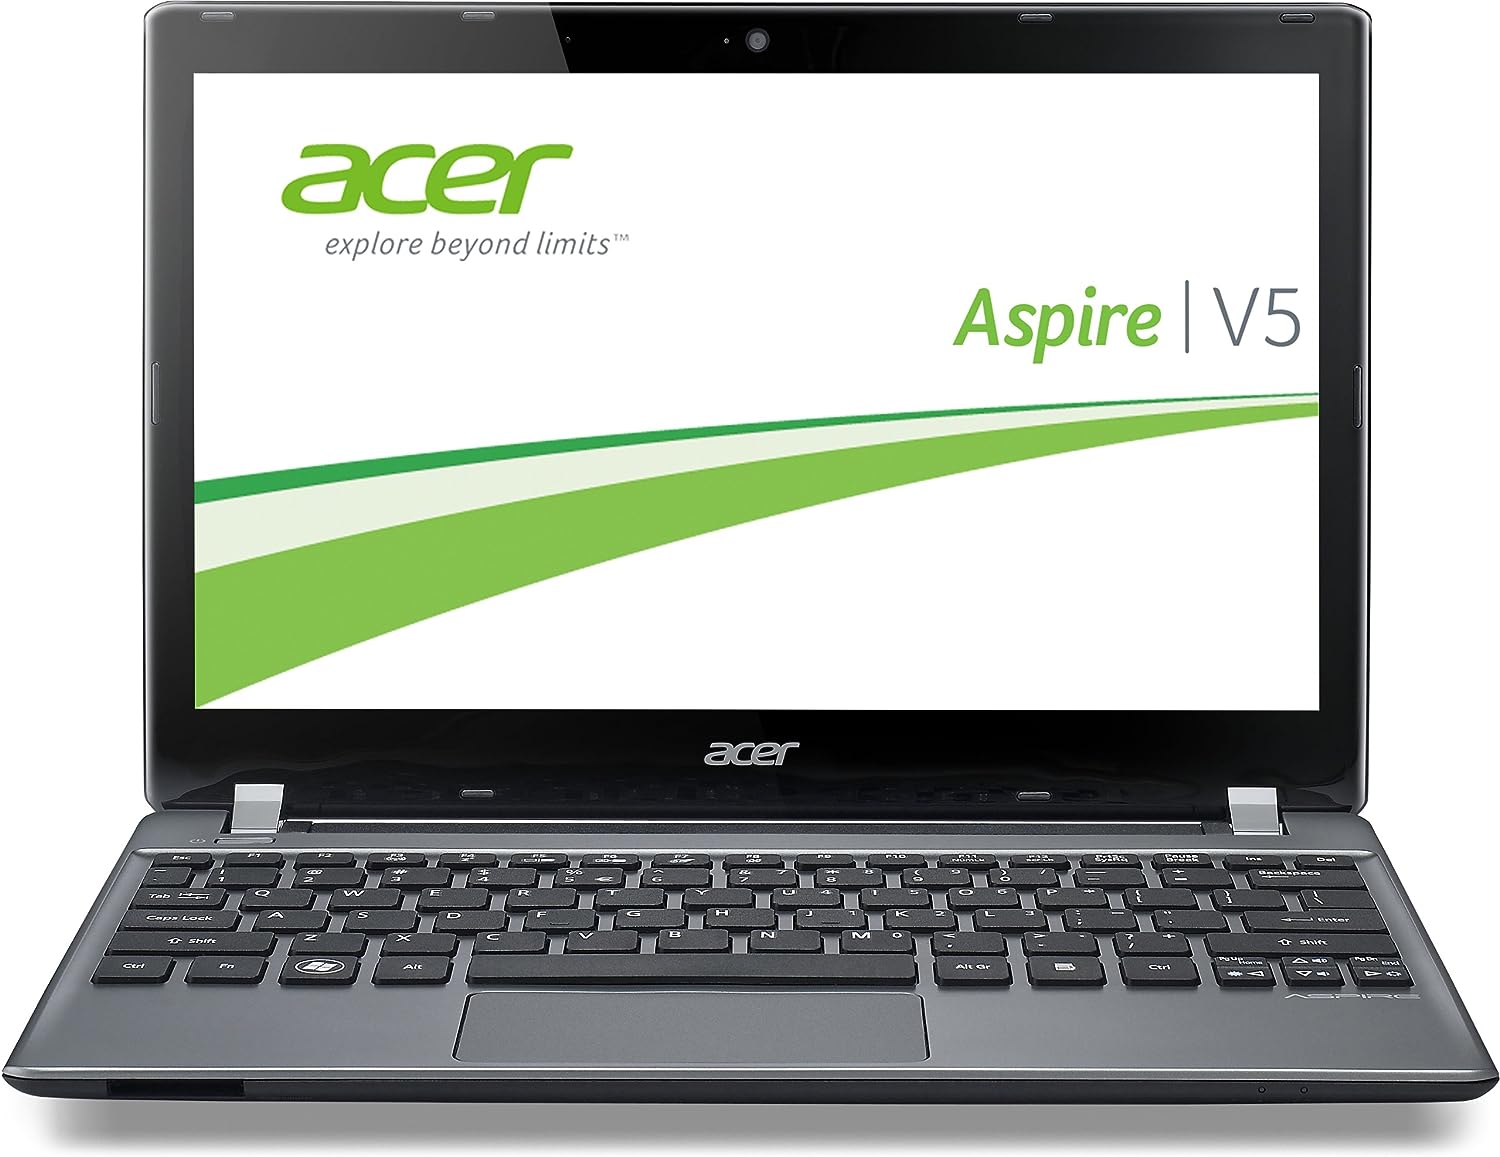 Acer Aspire V5-561G Notebook